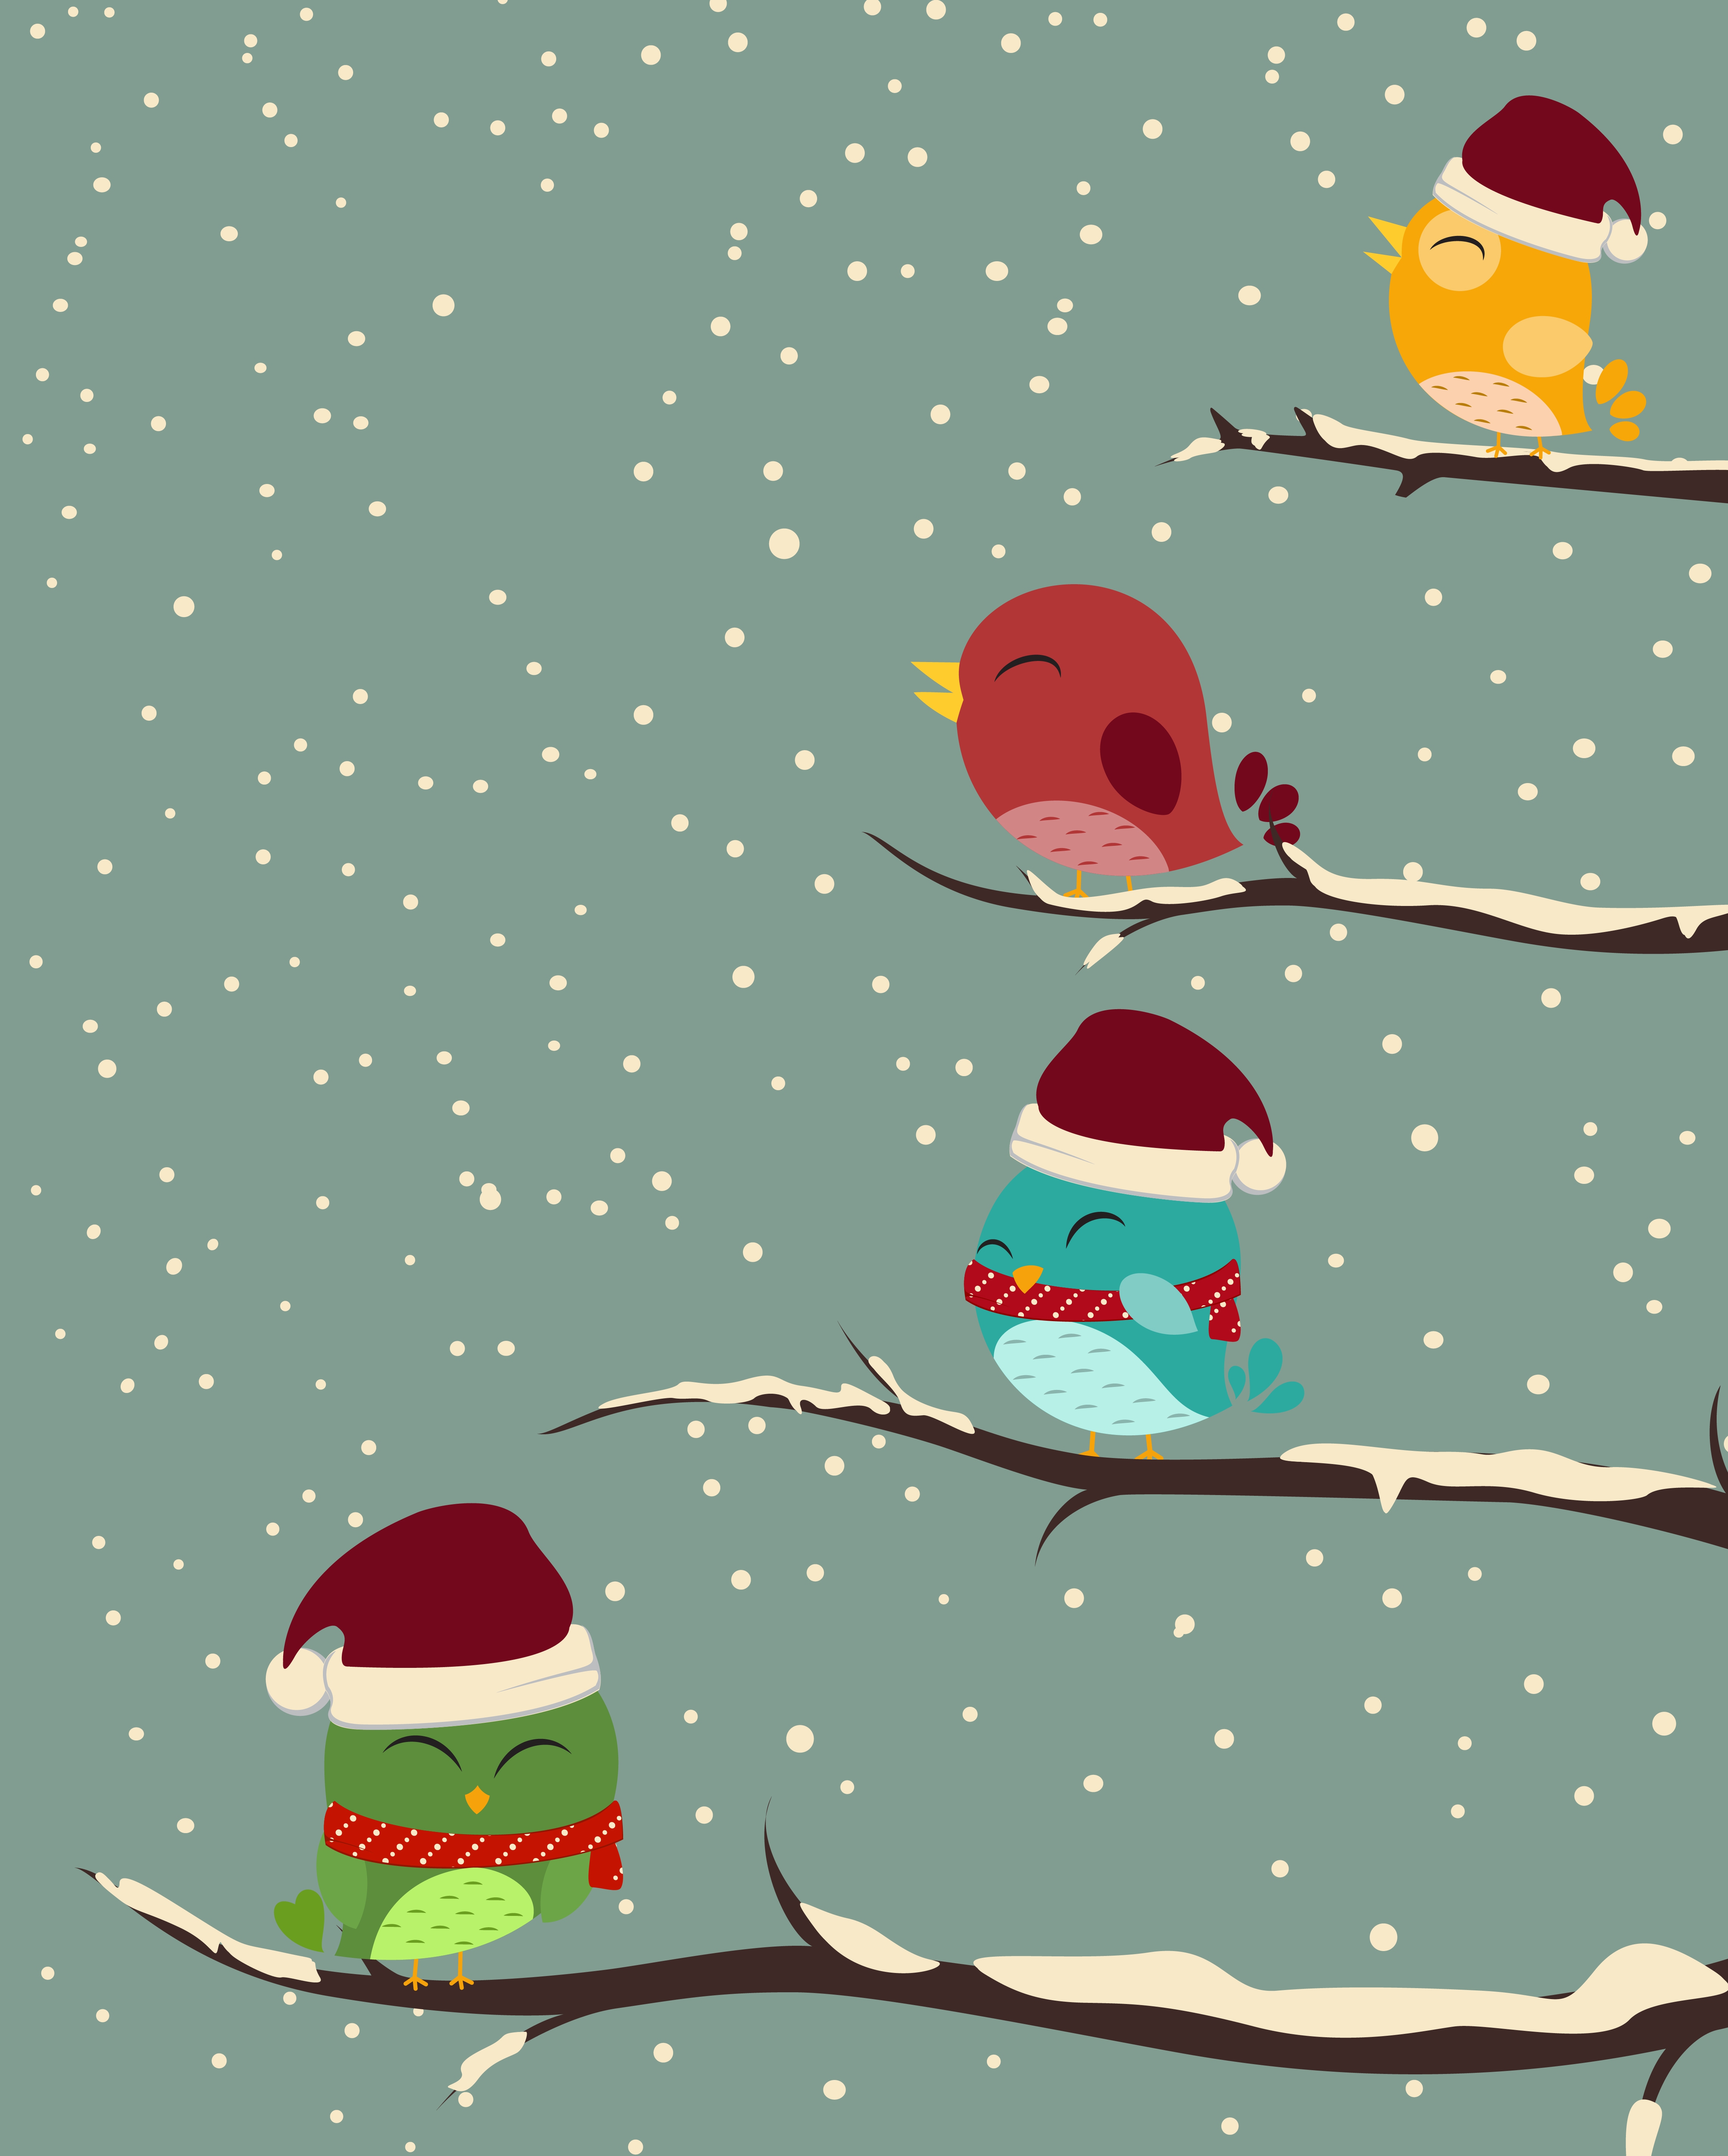 Download Birds on trees. winter scene - Download Free Vectors, Clipart Graphics & Vector Art